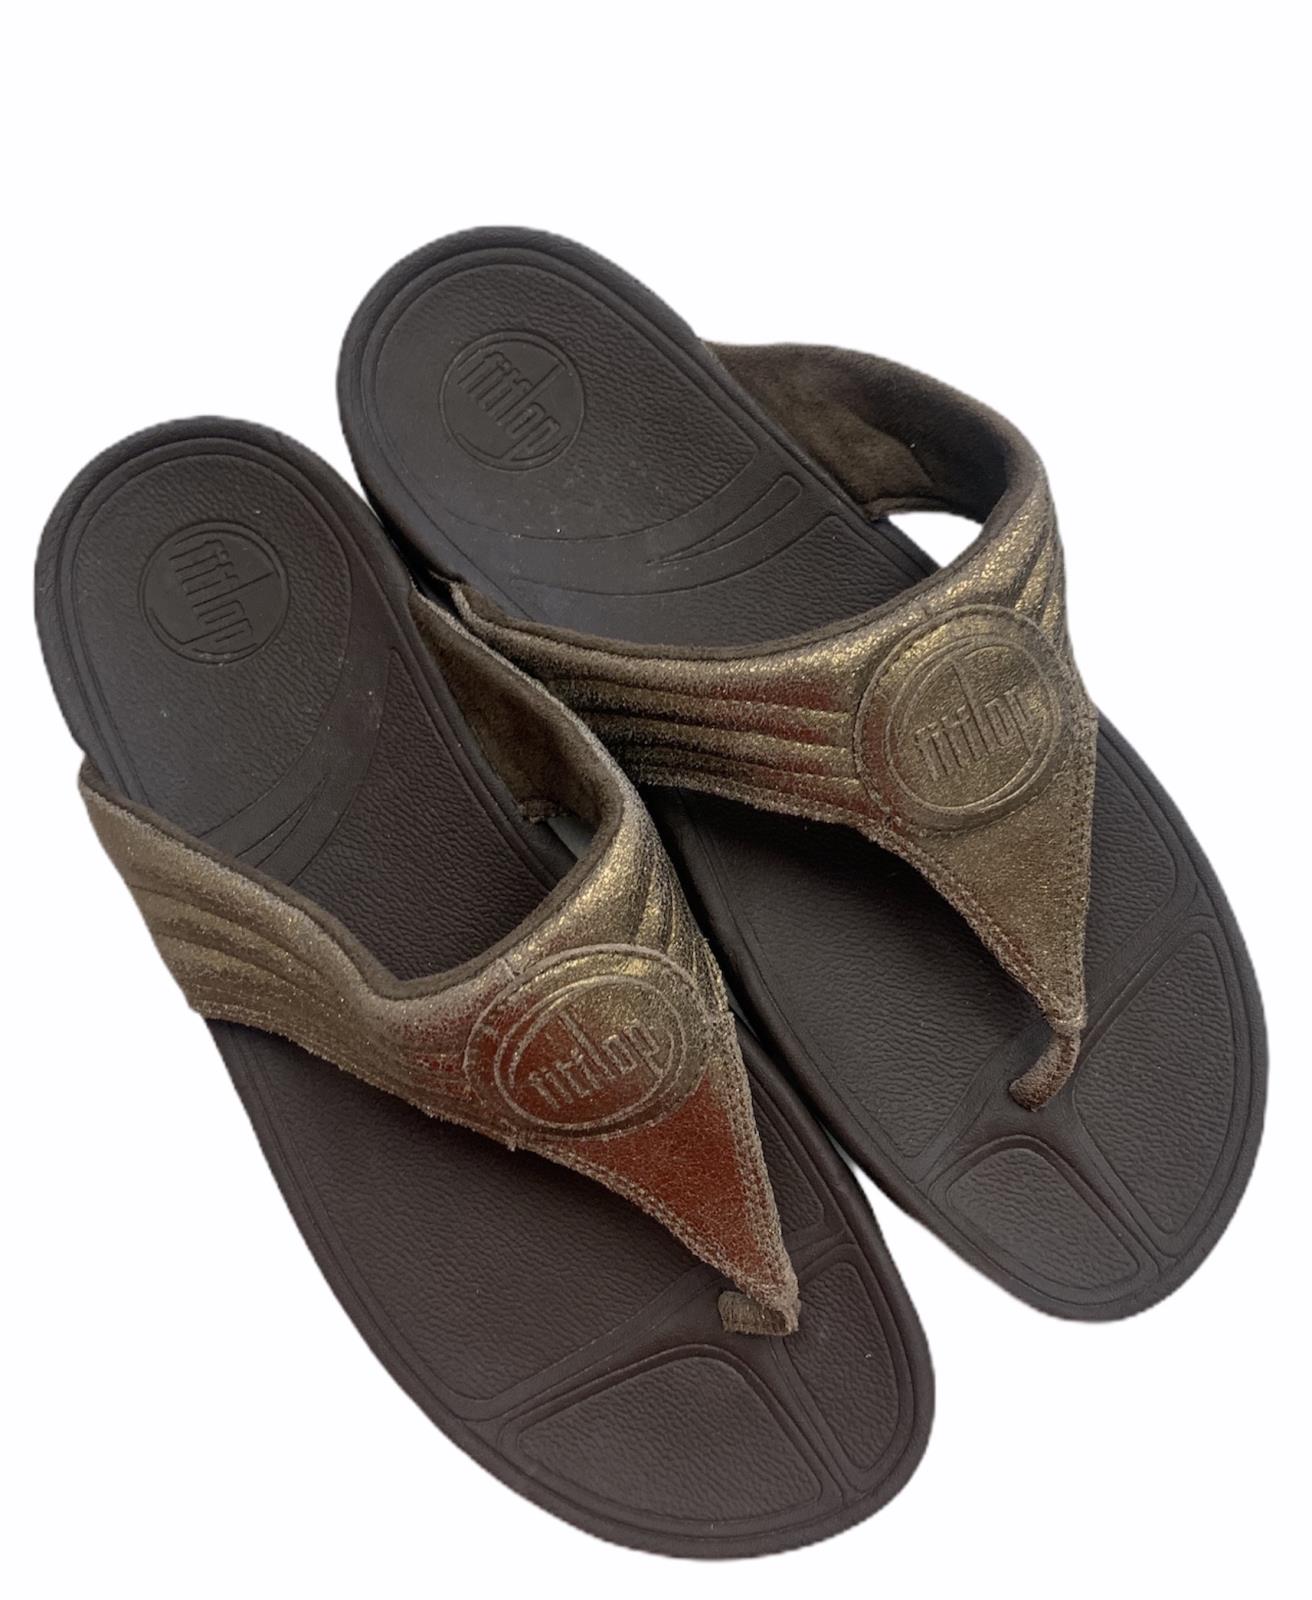 FitFlop Walkstar Bronze Flip Flop Slip on Sandals Size 11 US | eBay